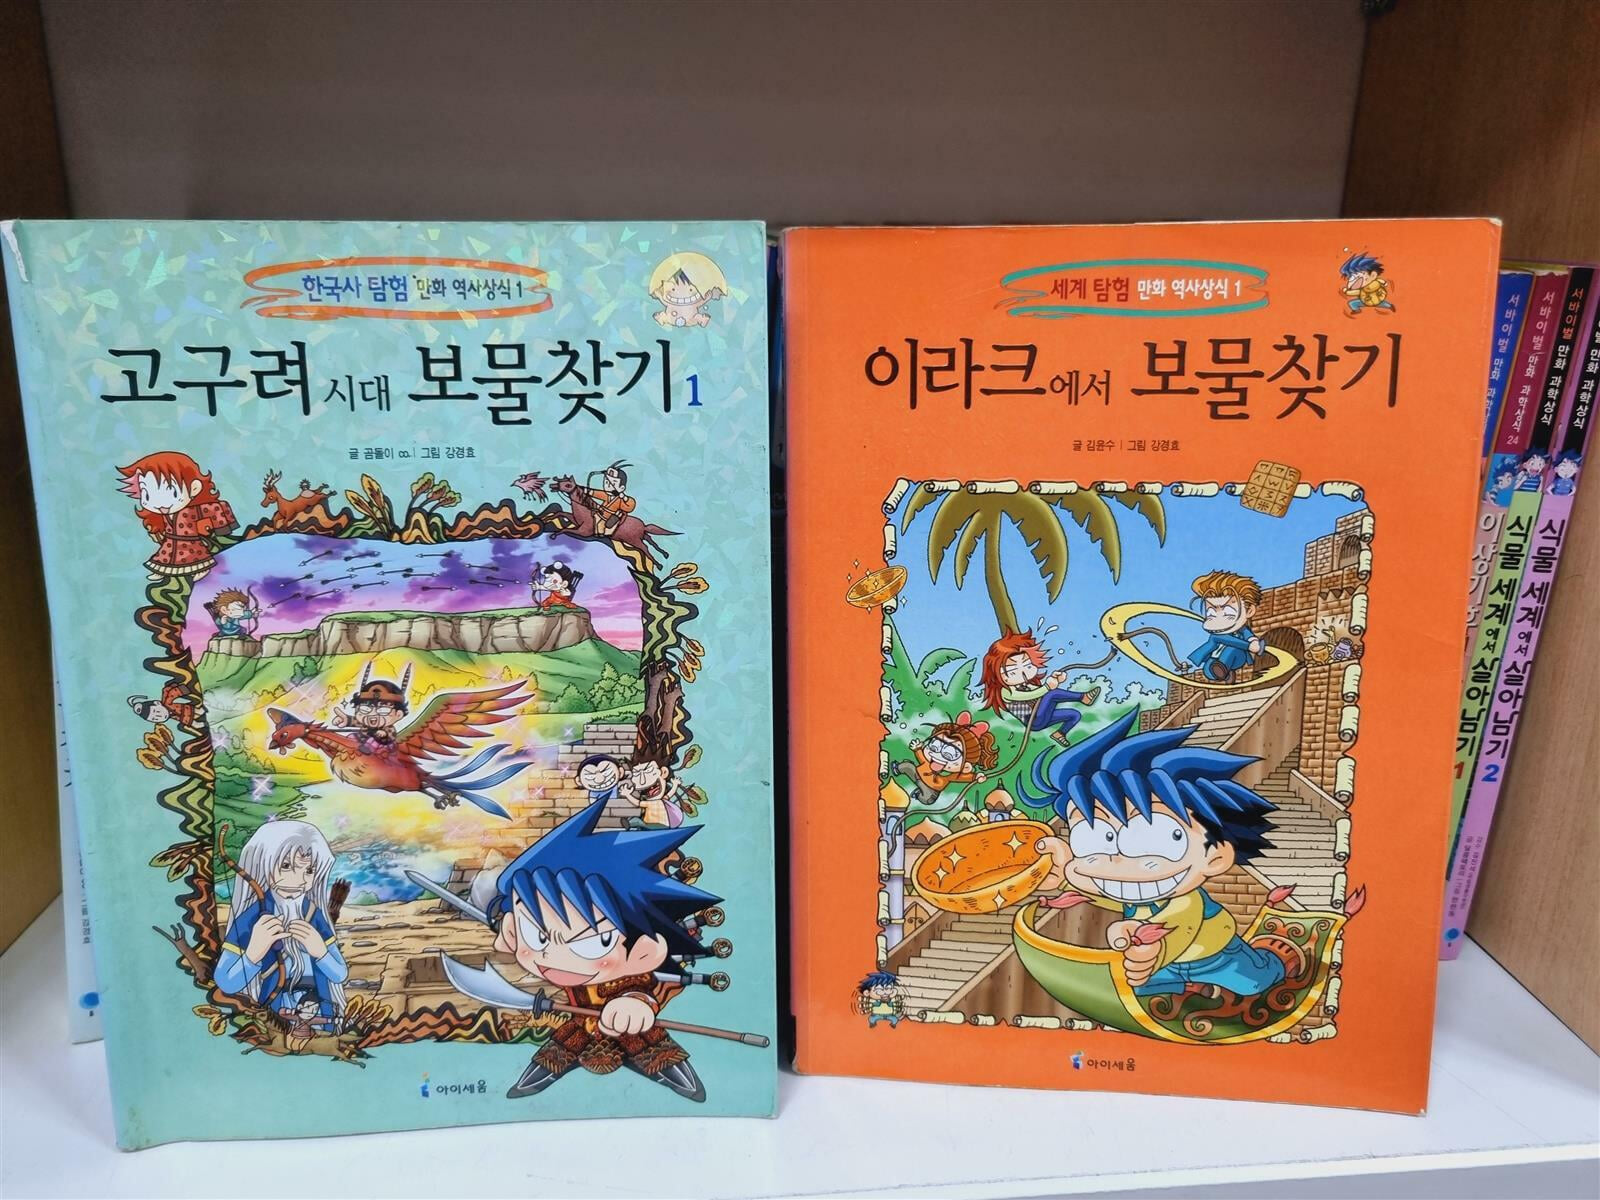 [중고] 보물찾기 시리즈 한국사탐험(18) 세계사탐험(24) + 살아남기 시리즈(9권) 총51권 세트 -- 상세사진 올림 중급